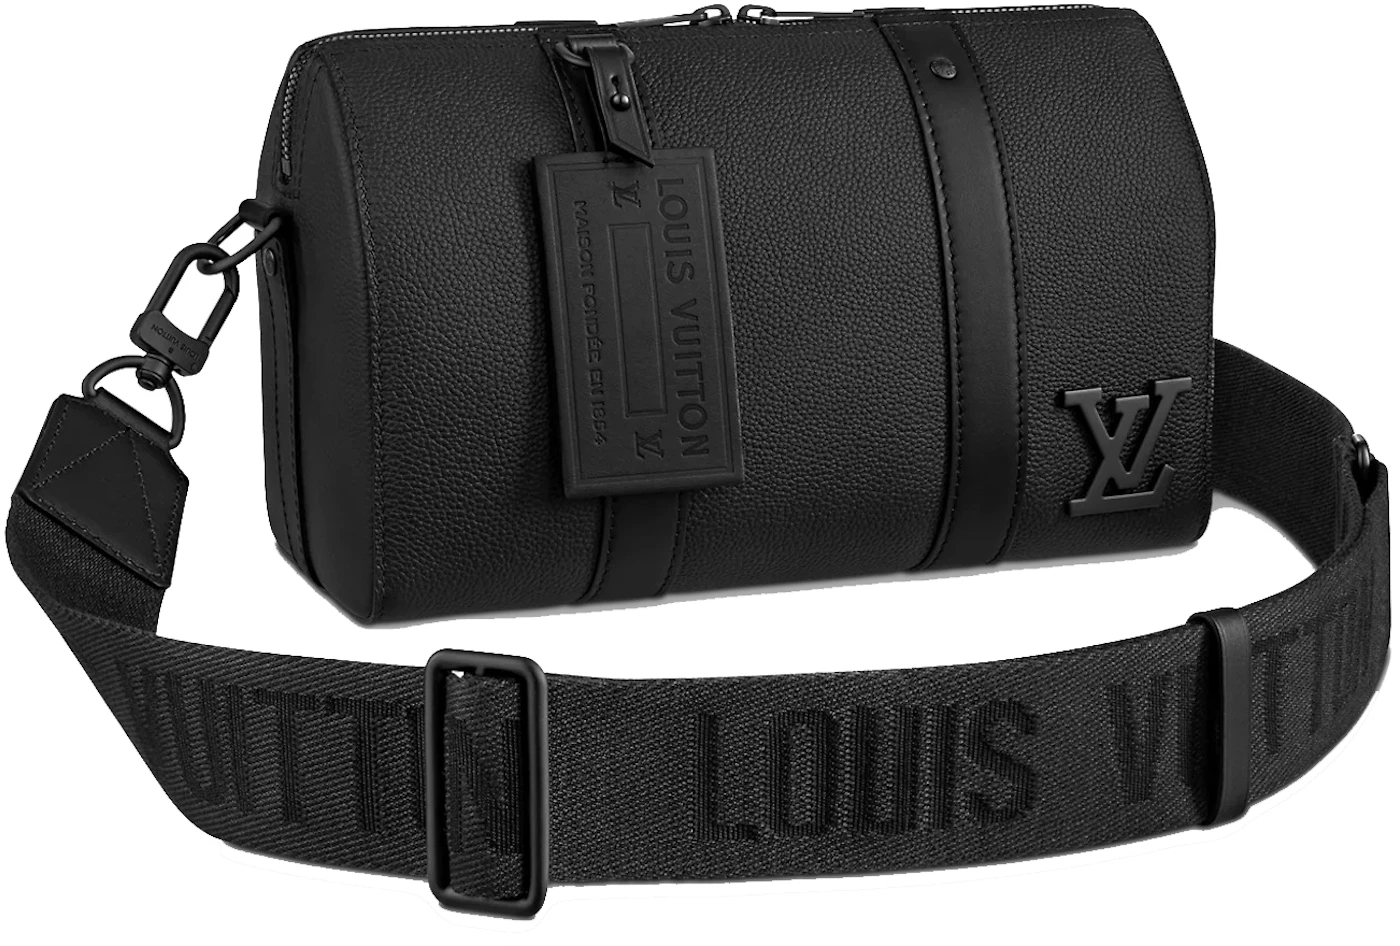 NWT Louis Vuitton Wheel box bag Virgil Abloh No 7